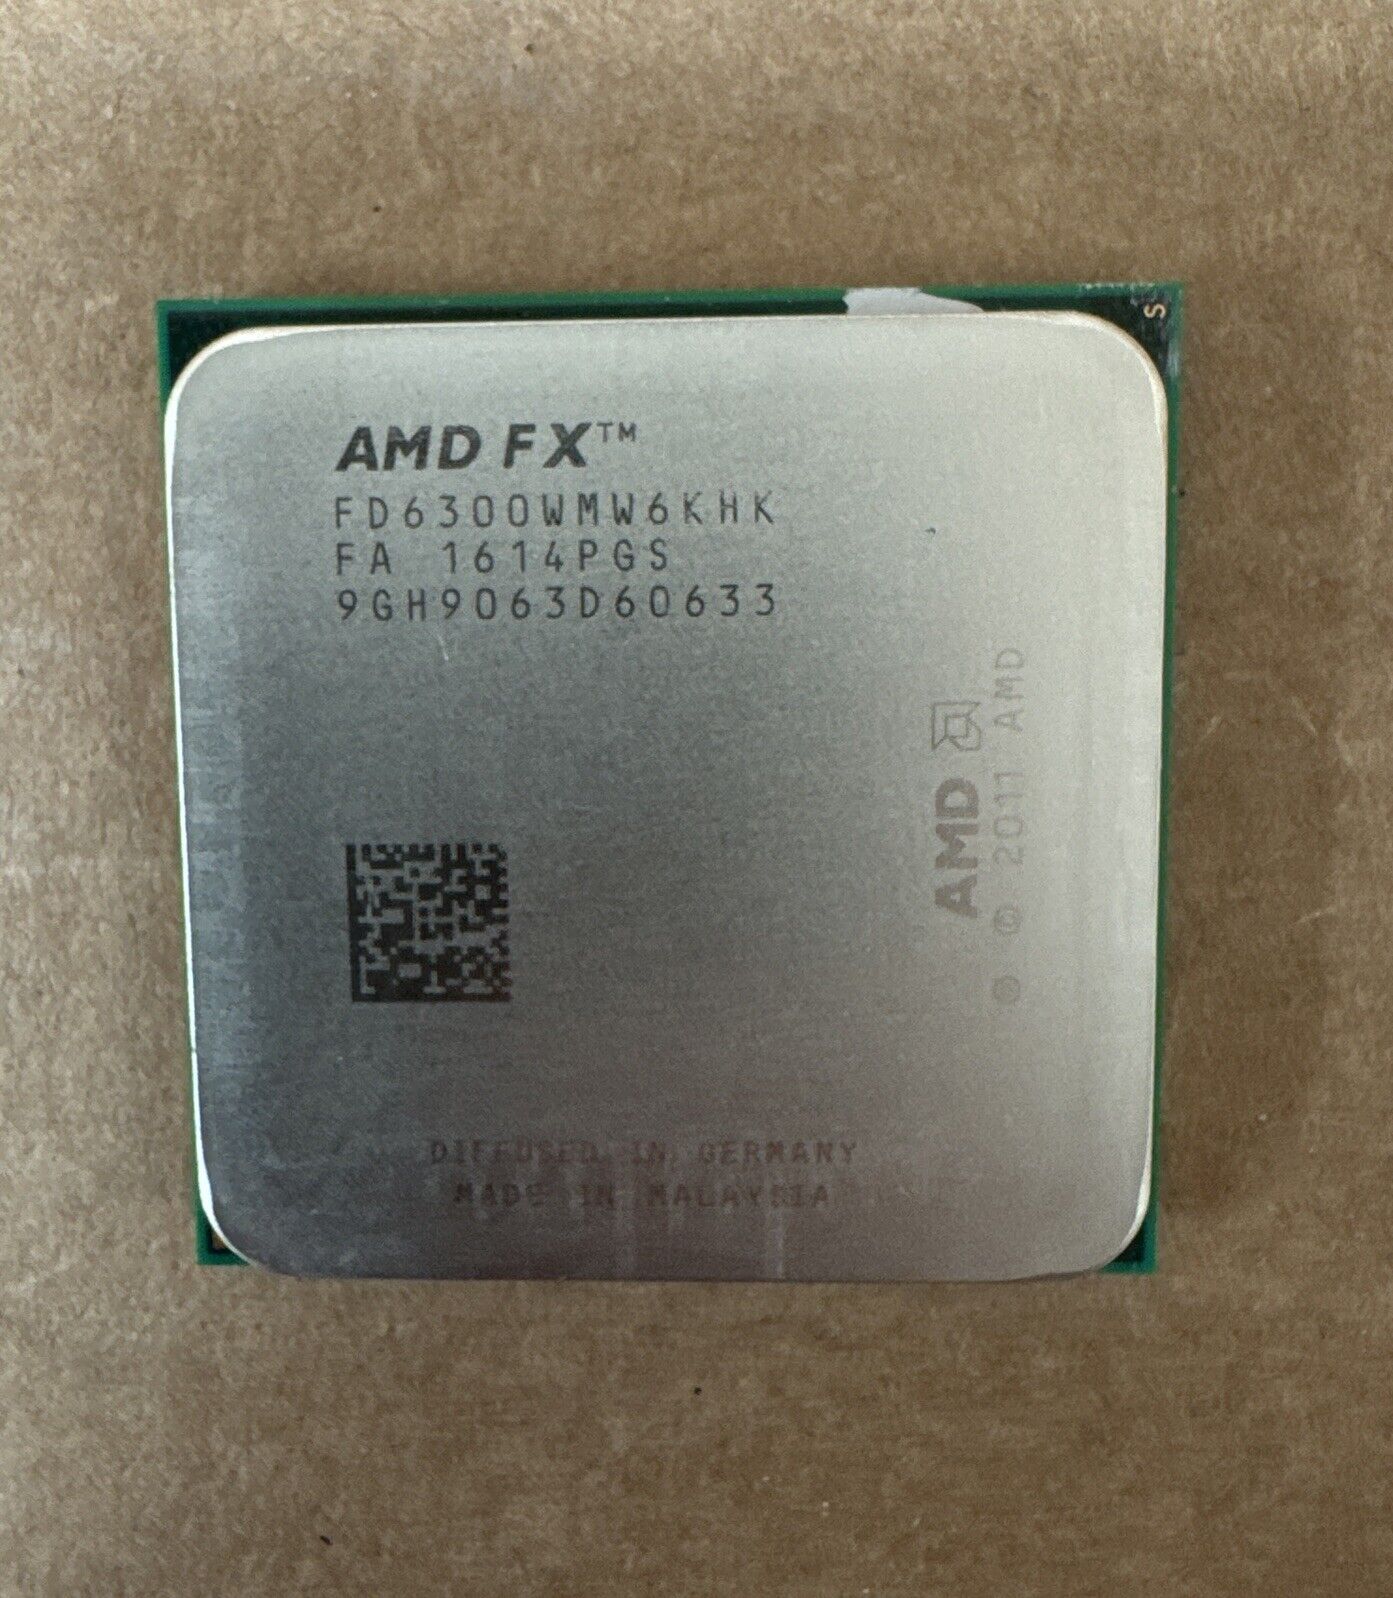 AMD FX-6300 AM3+ 4.1GHz Boost Six Core Processor FD6300WMW6KHK 95W 8MB L3 Cache